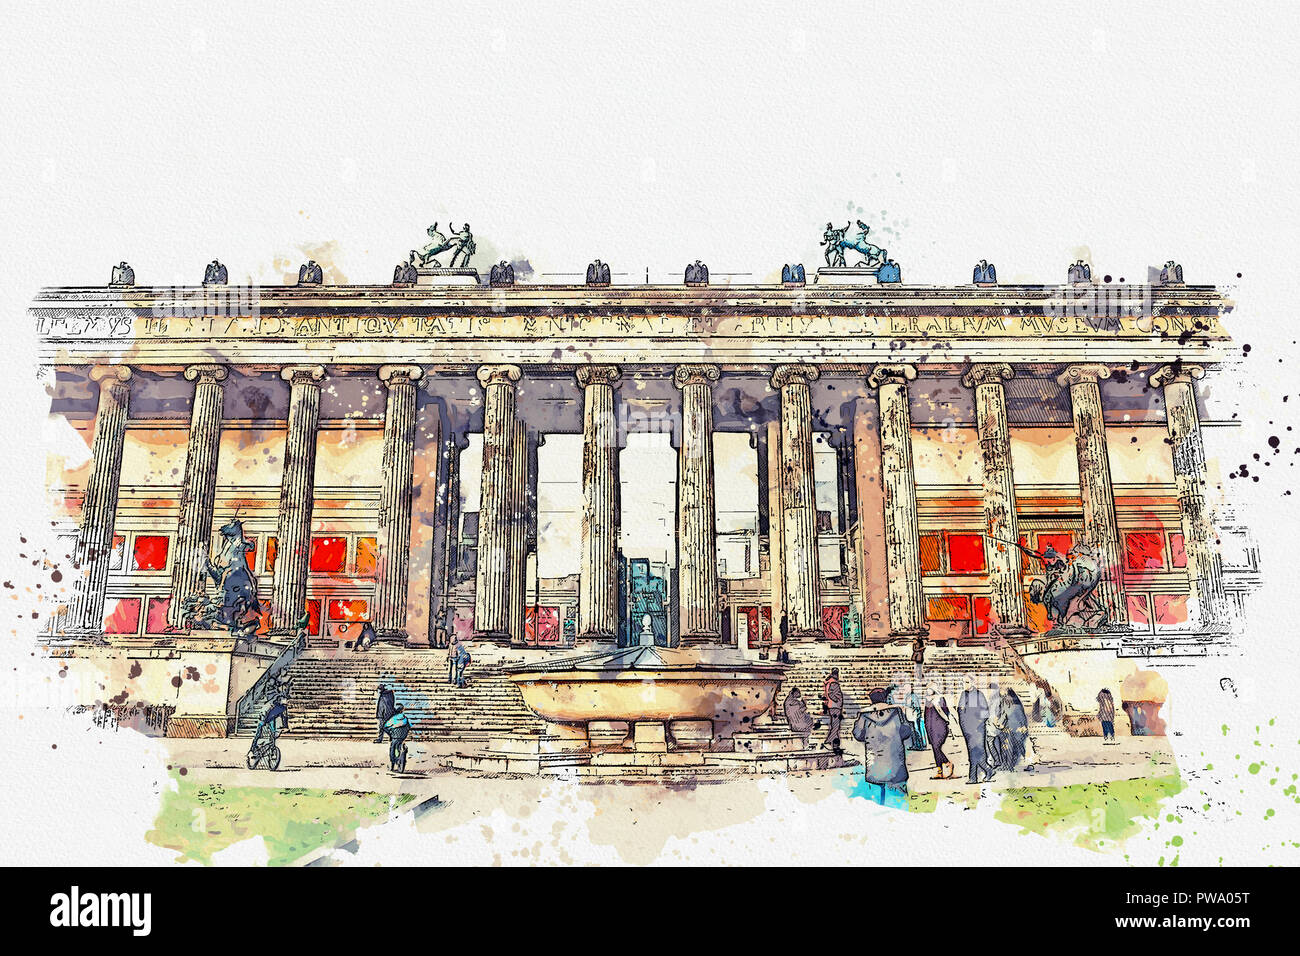 Ein Aquarell Skizze oder eine Abbildung. Altes Museum oder Altes Museum. Kunst Museum in Berlin auf der Museumsinsel. Stockfoto